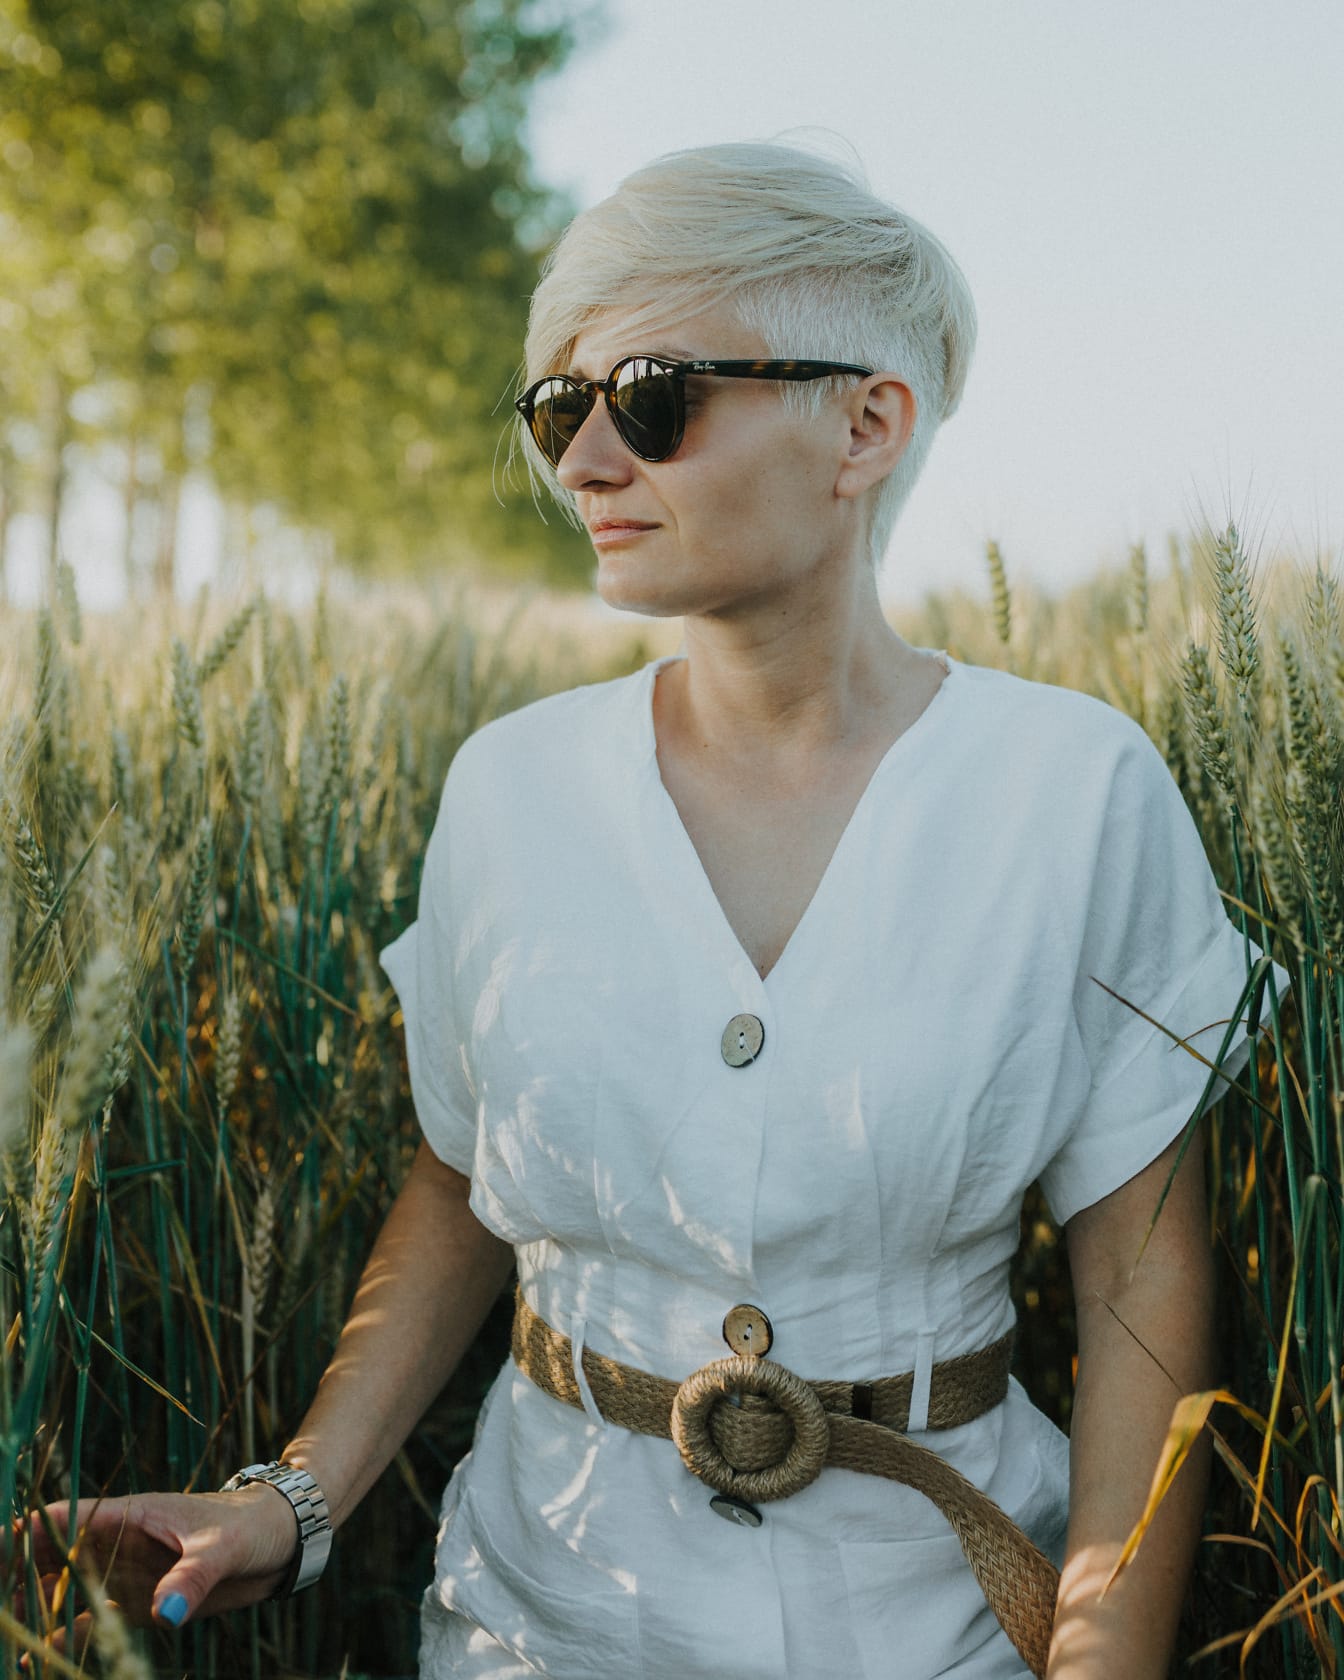 Người phụ nữ nông thôn đẹp trai trên cánh đồng lúa mì mặc váy trắng và kính râm